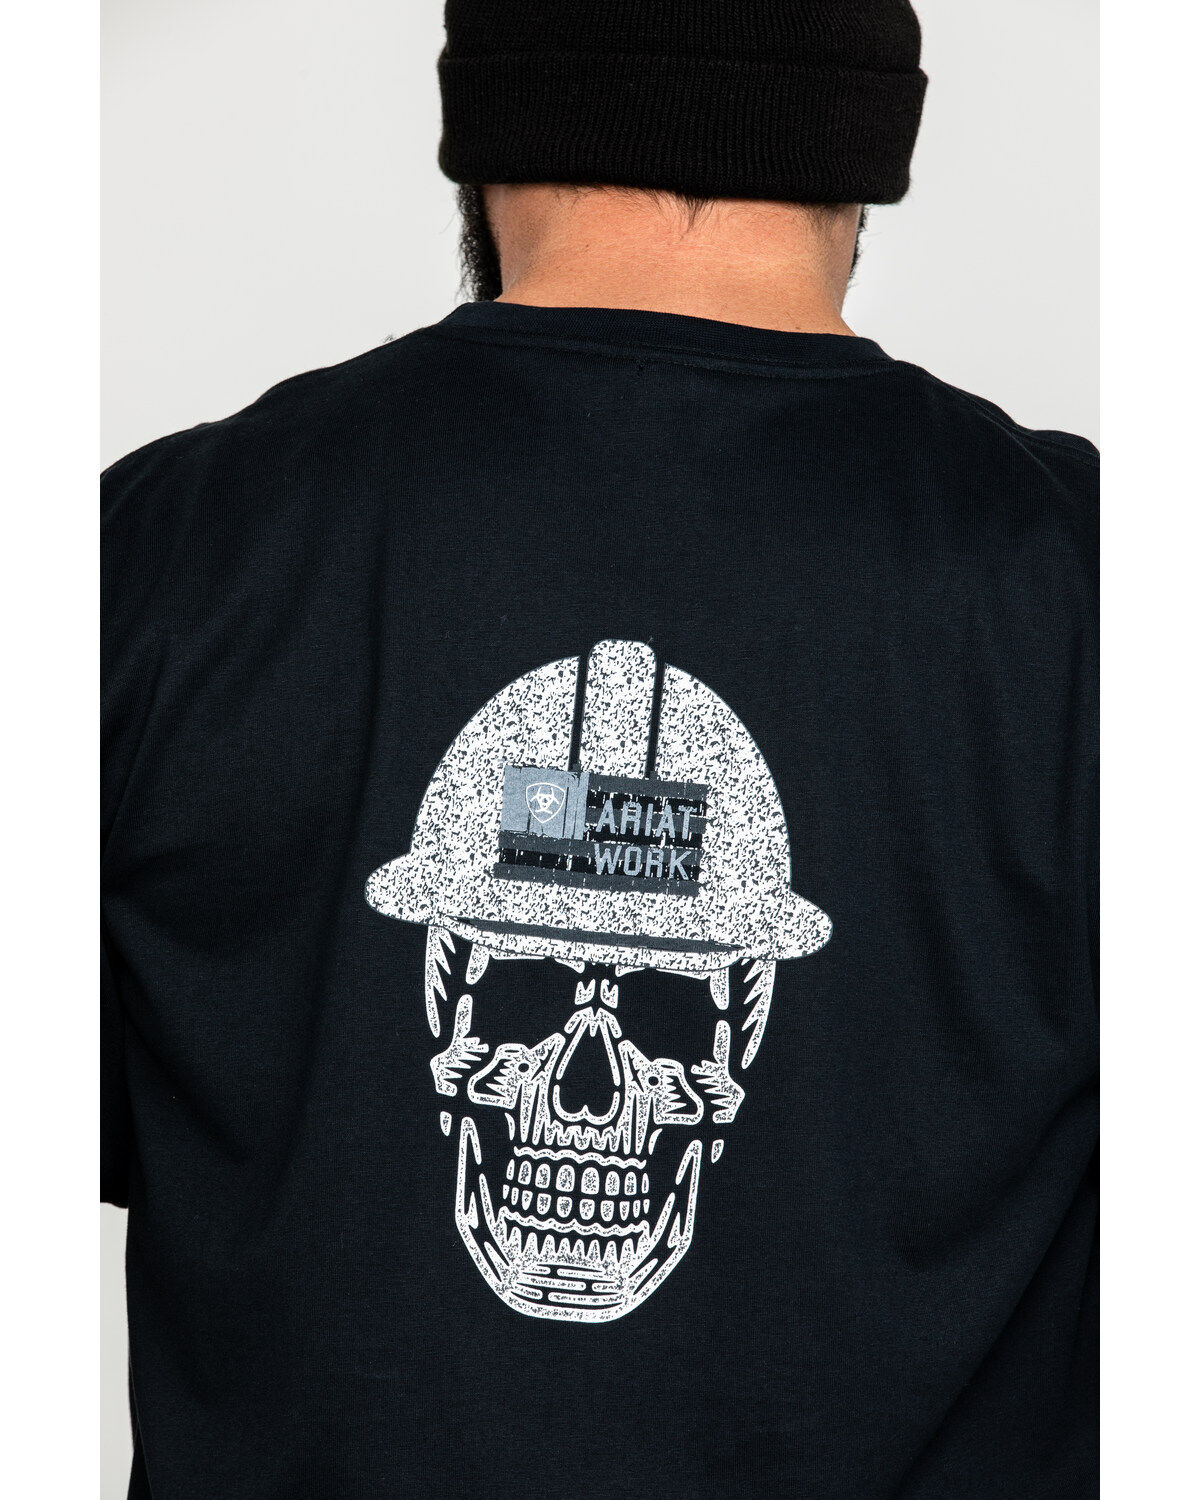 Ariat® Men's FR Roughneck Skull Logo Malbec Red T-Shirt 10026435